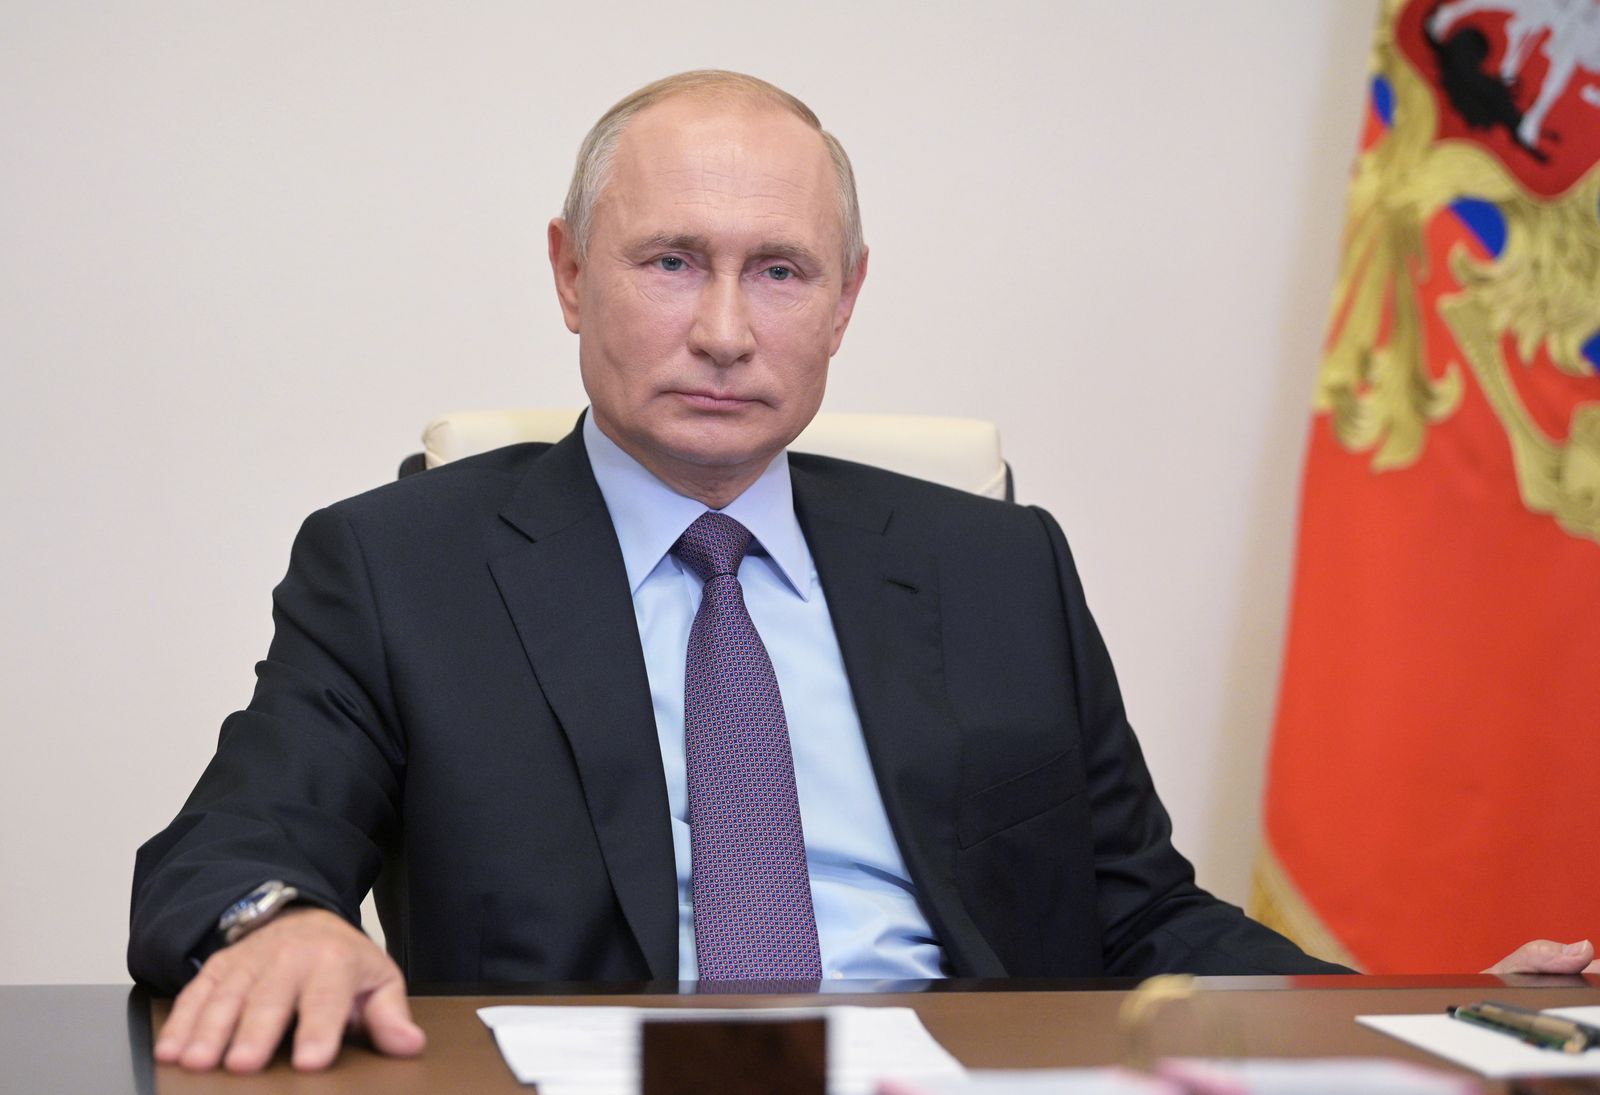 الرئيس الروسي بوتين يحضر حفل إطلاق وحدة تكرير النفط الجديدة Euro + Combined في مصفاة غازبروم نفط موسكو ، عبر رابط فيديو خارج موسكو - via REUTERS